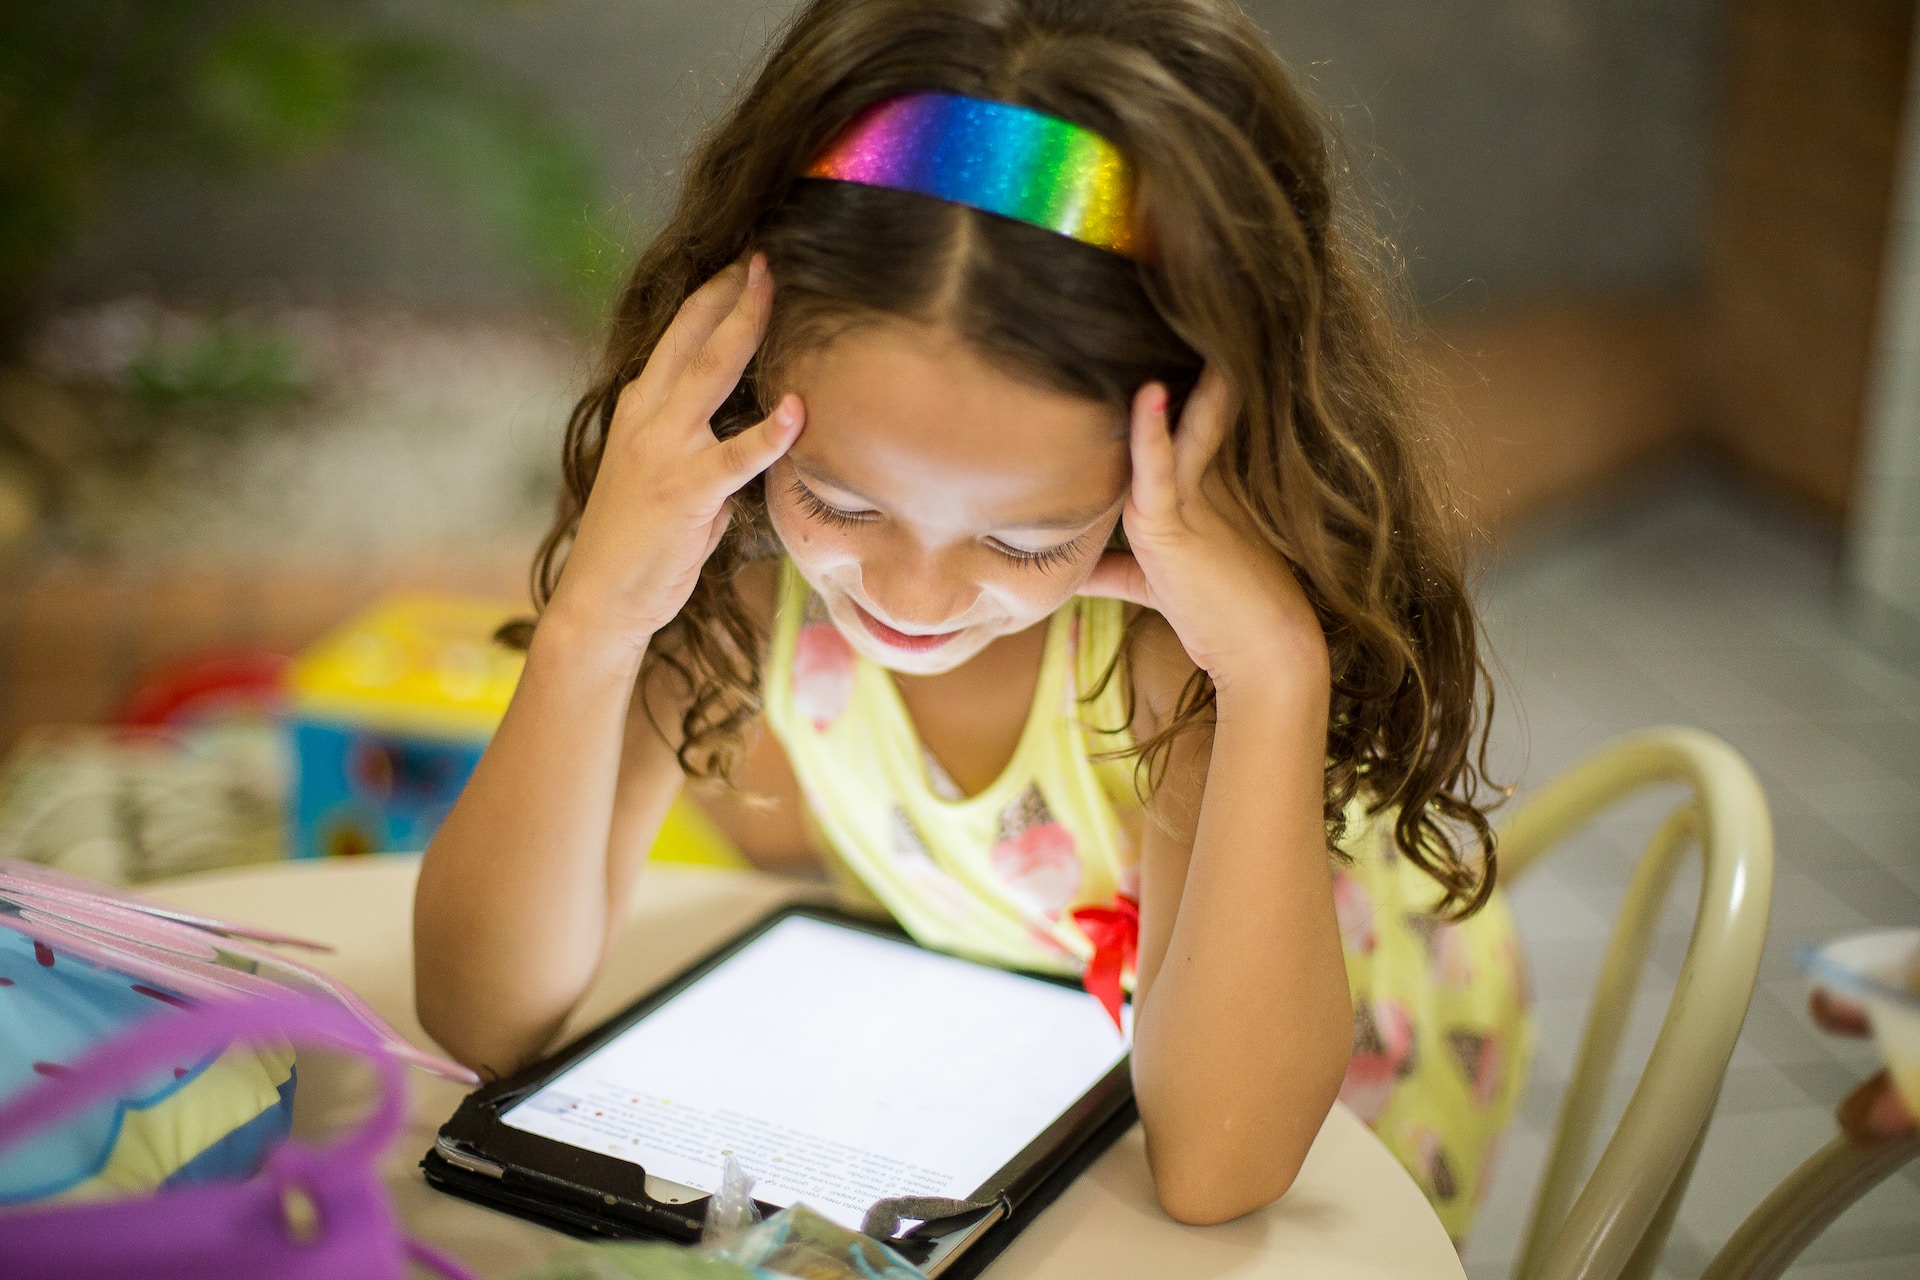 bambina assorta mentre utilizza il tablet. nessuno pensa che è una questione di salute